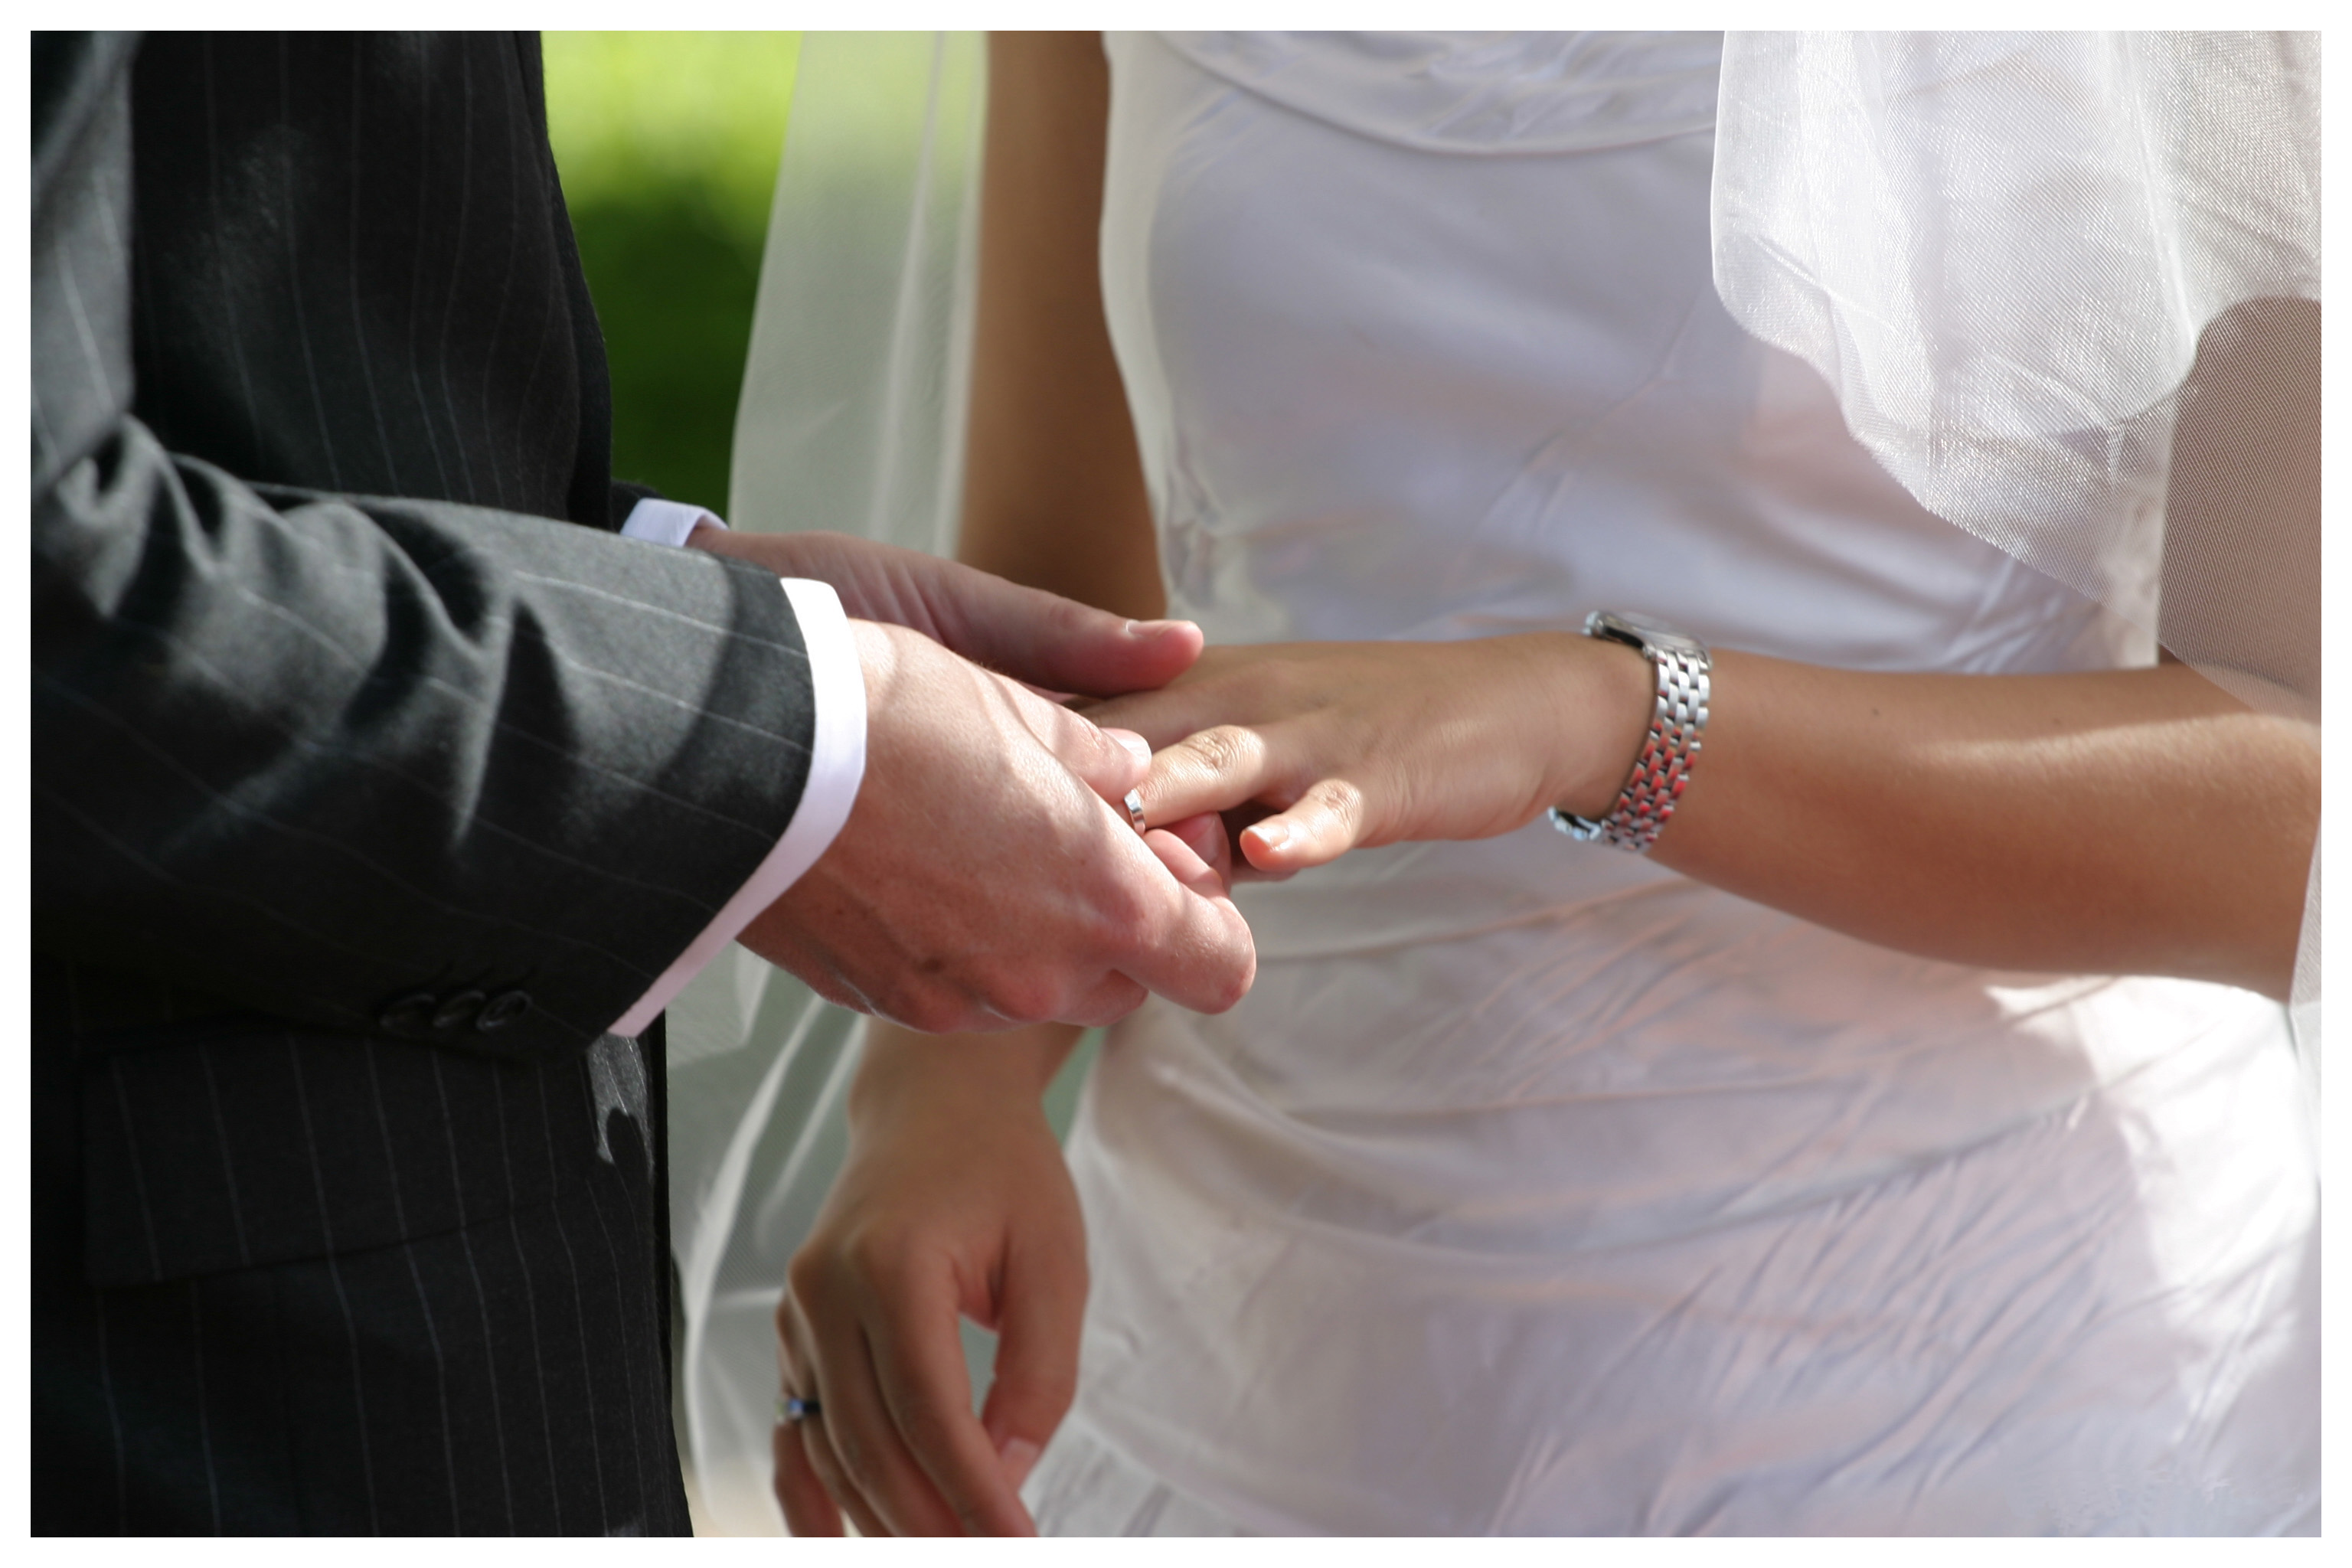 Первое замужество. Жених одевает кольцо невесте. Руки молодоженов с кольцами. Обручальные кольца на руках. Невеста на руках у жениха.